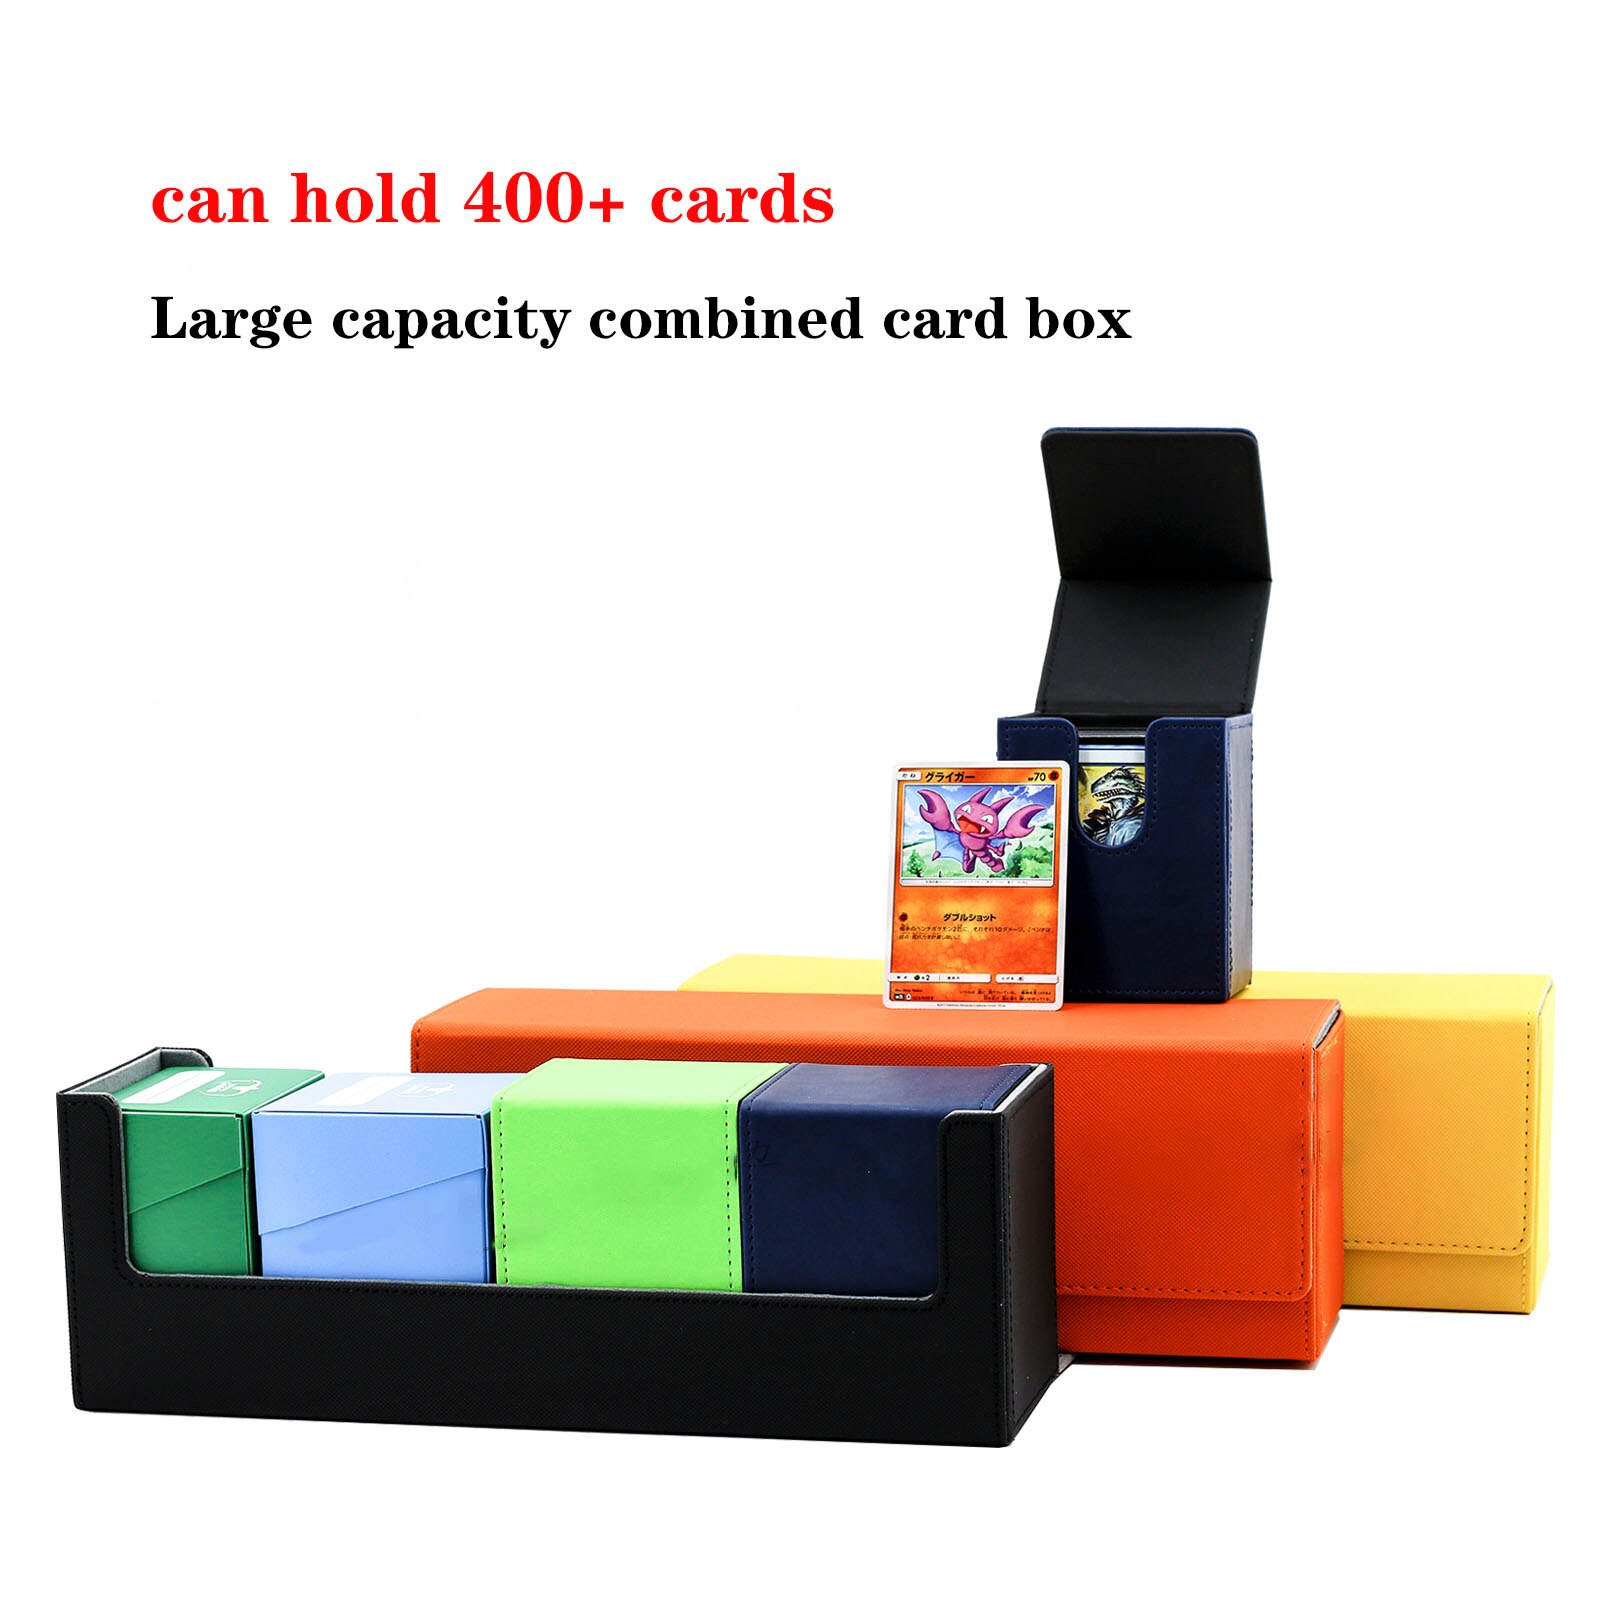 대용량 보드 게임 400 + 카드 박스, 카드 케이스 카드 컨테이너 컬렉션 MTG/PKM/PTCG 트레이딩 보드 게임 카드